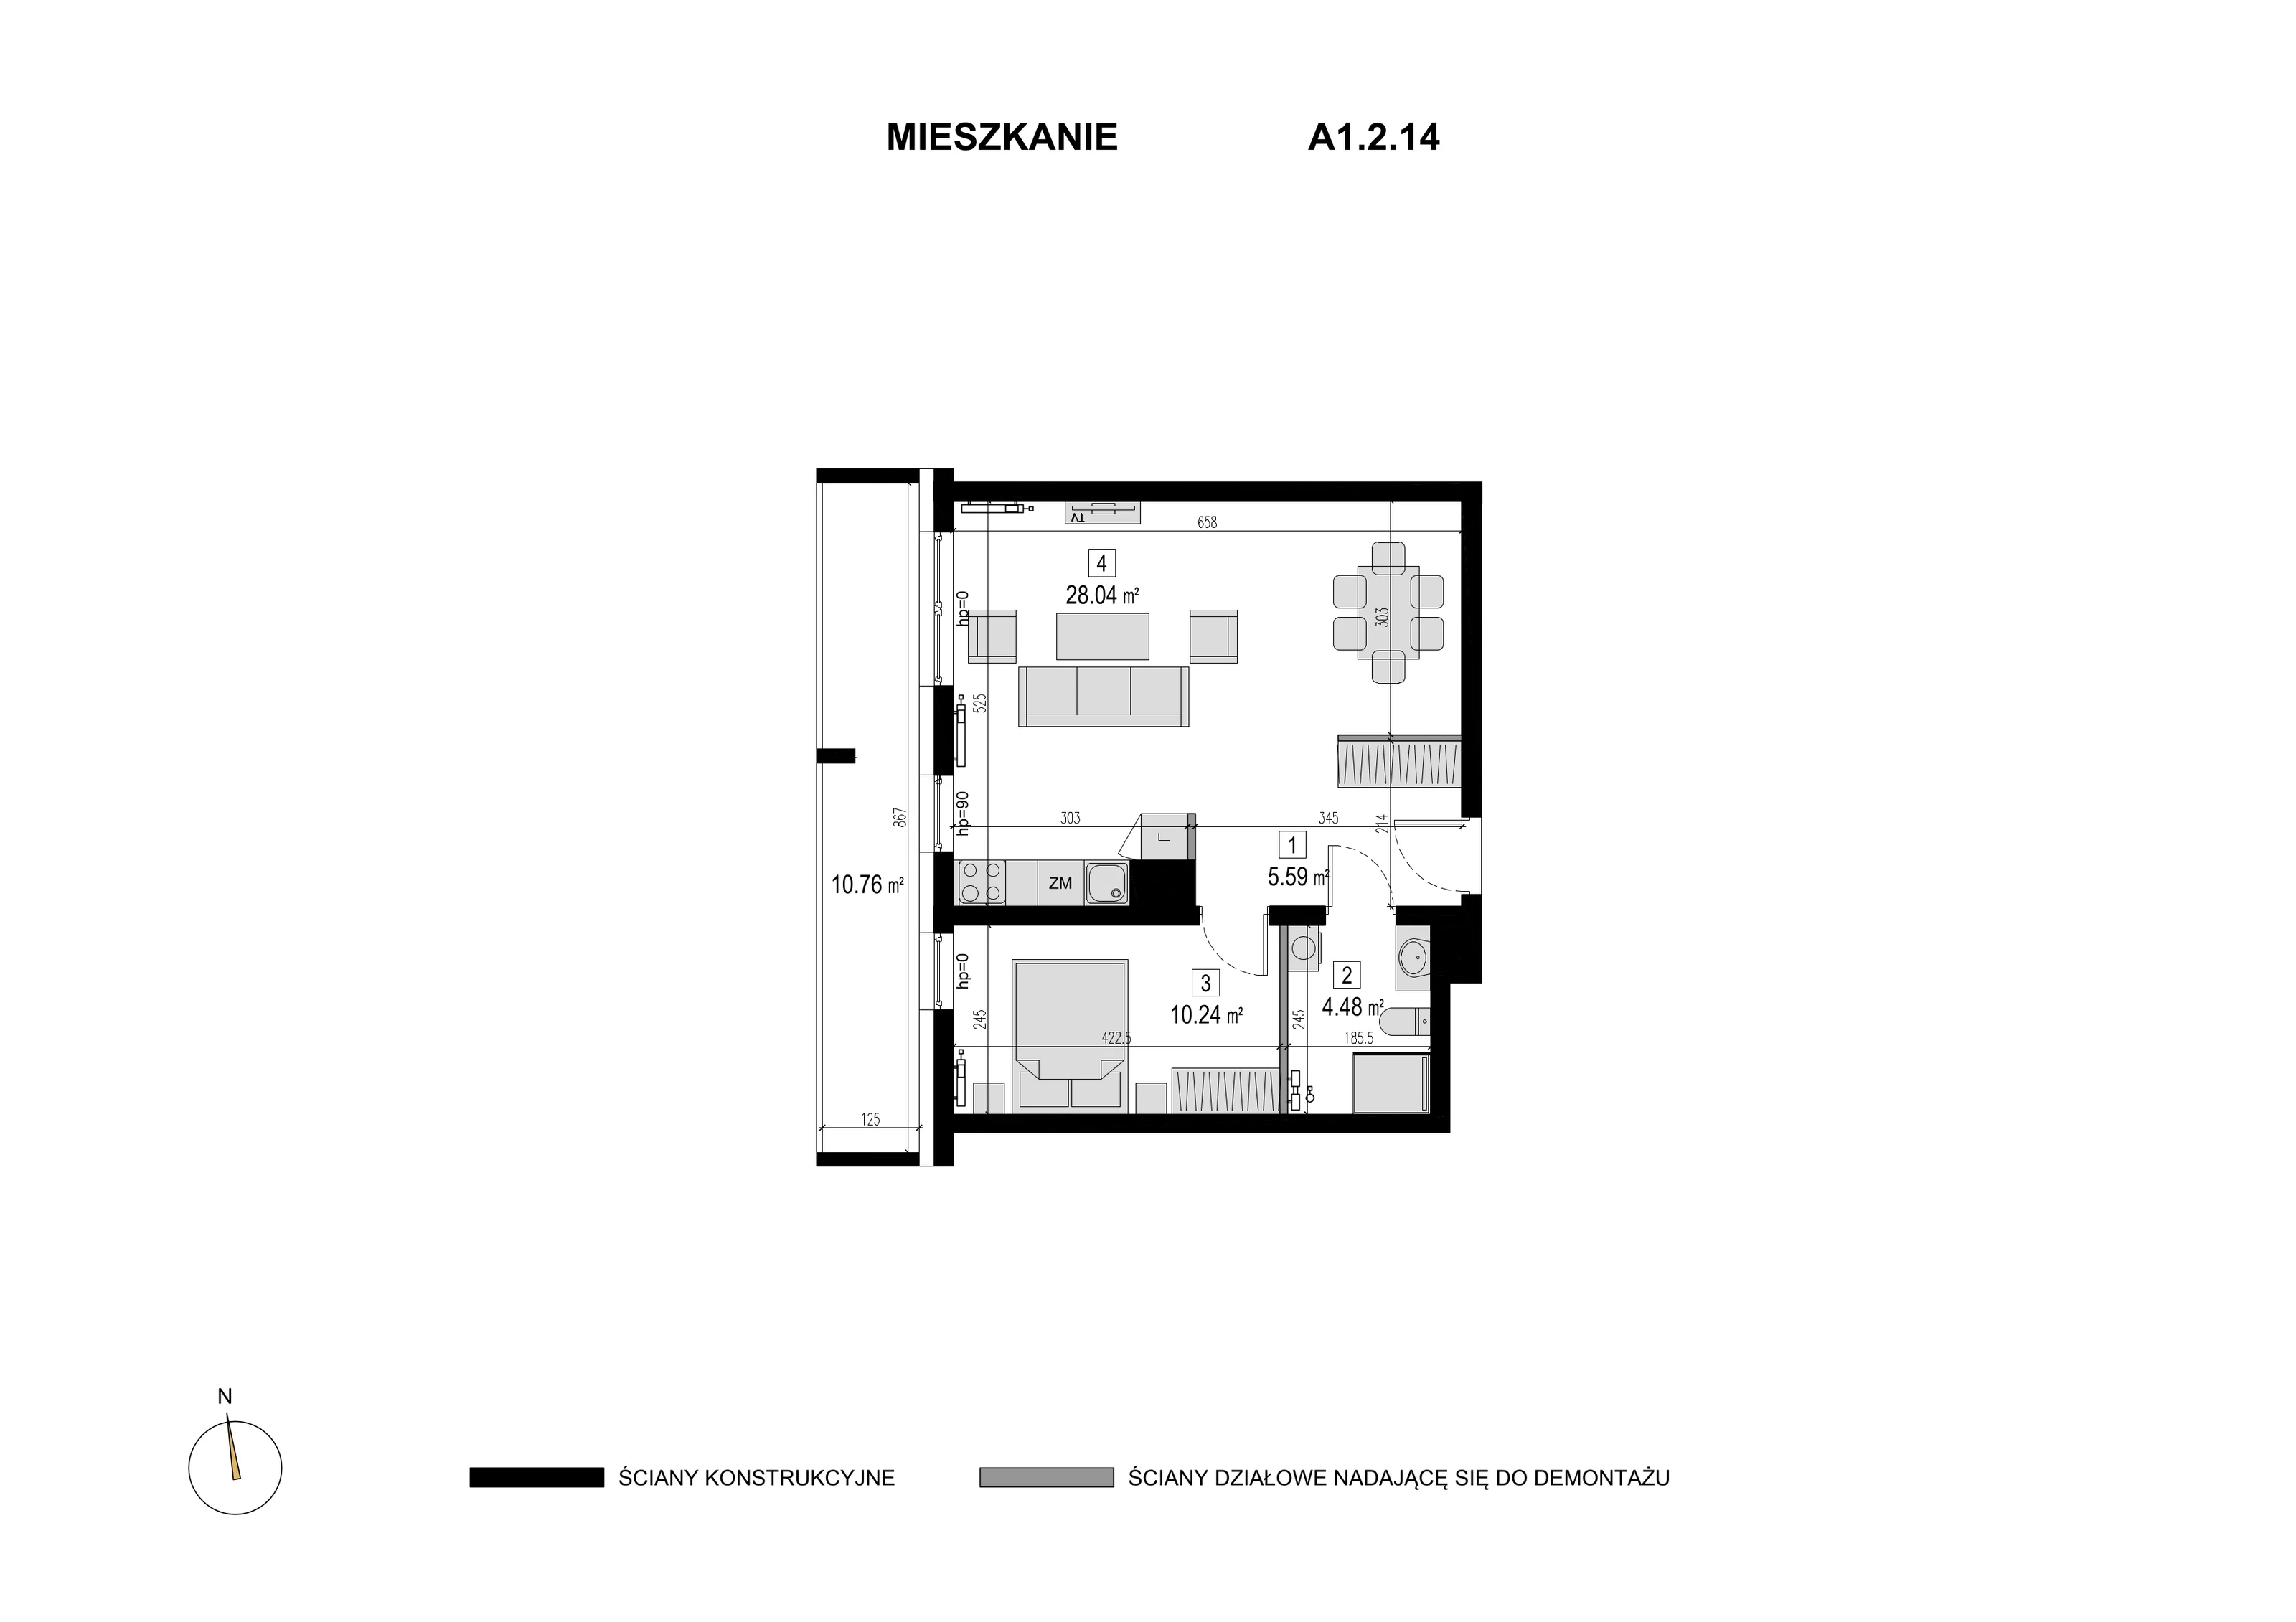 Mieszkanie 48,35 m², piętro 1, oferta nr A1.2.14, Novaforma, Legnica, ul. Chojnowska